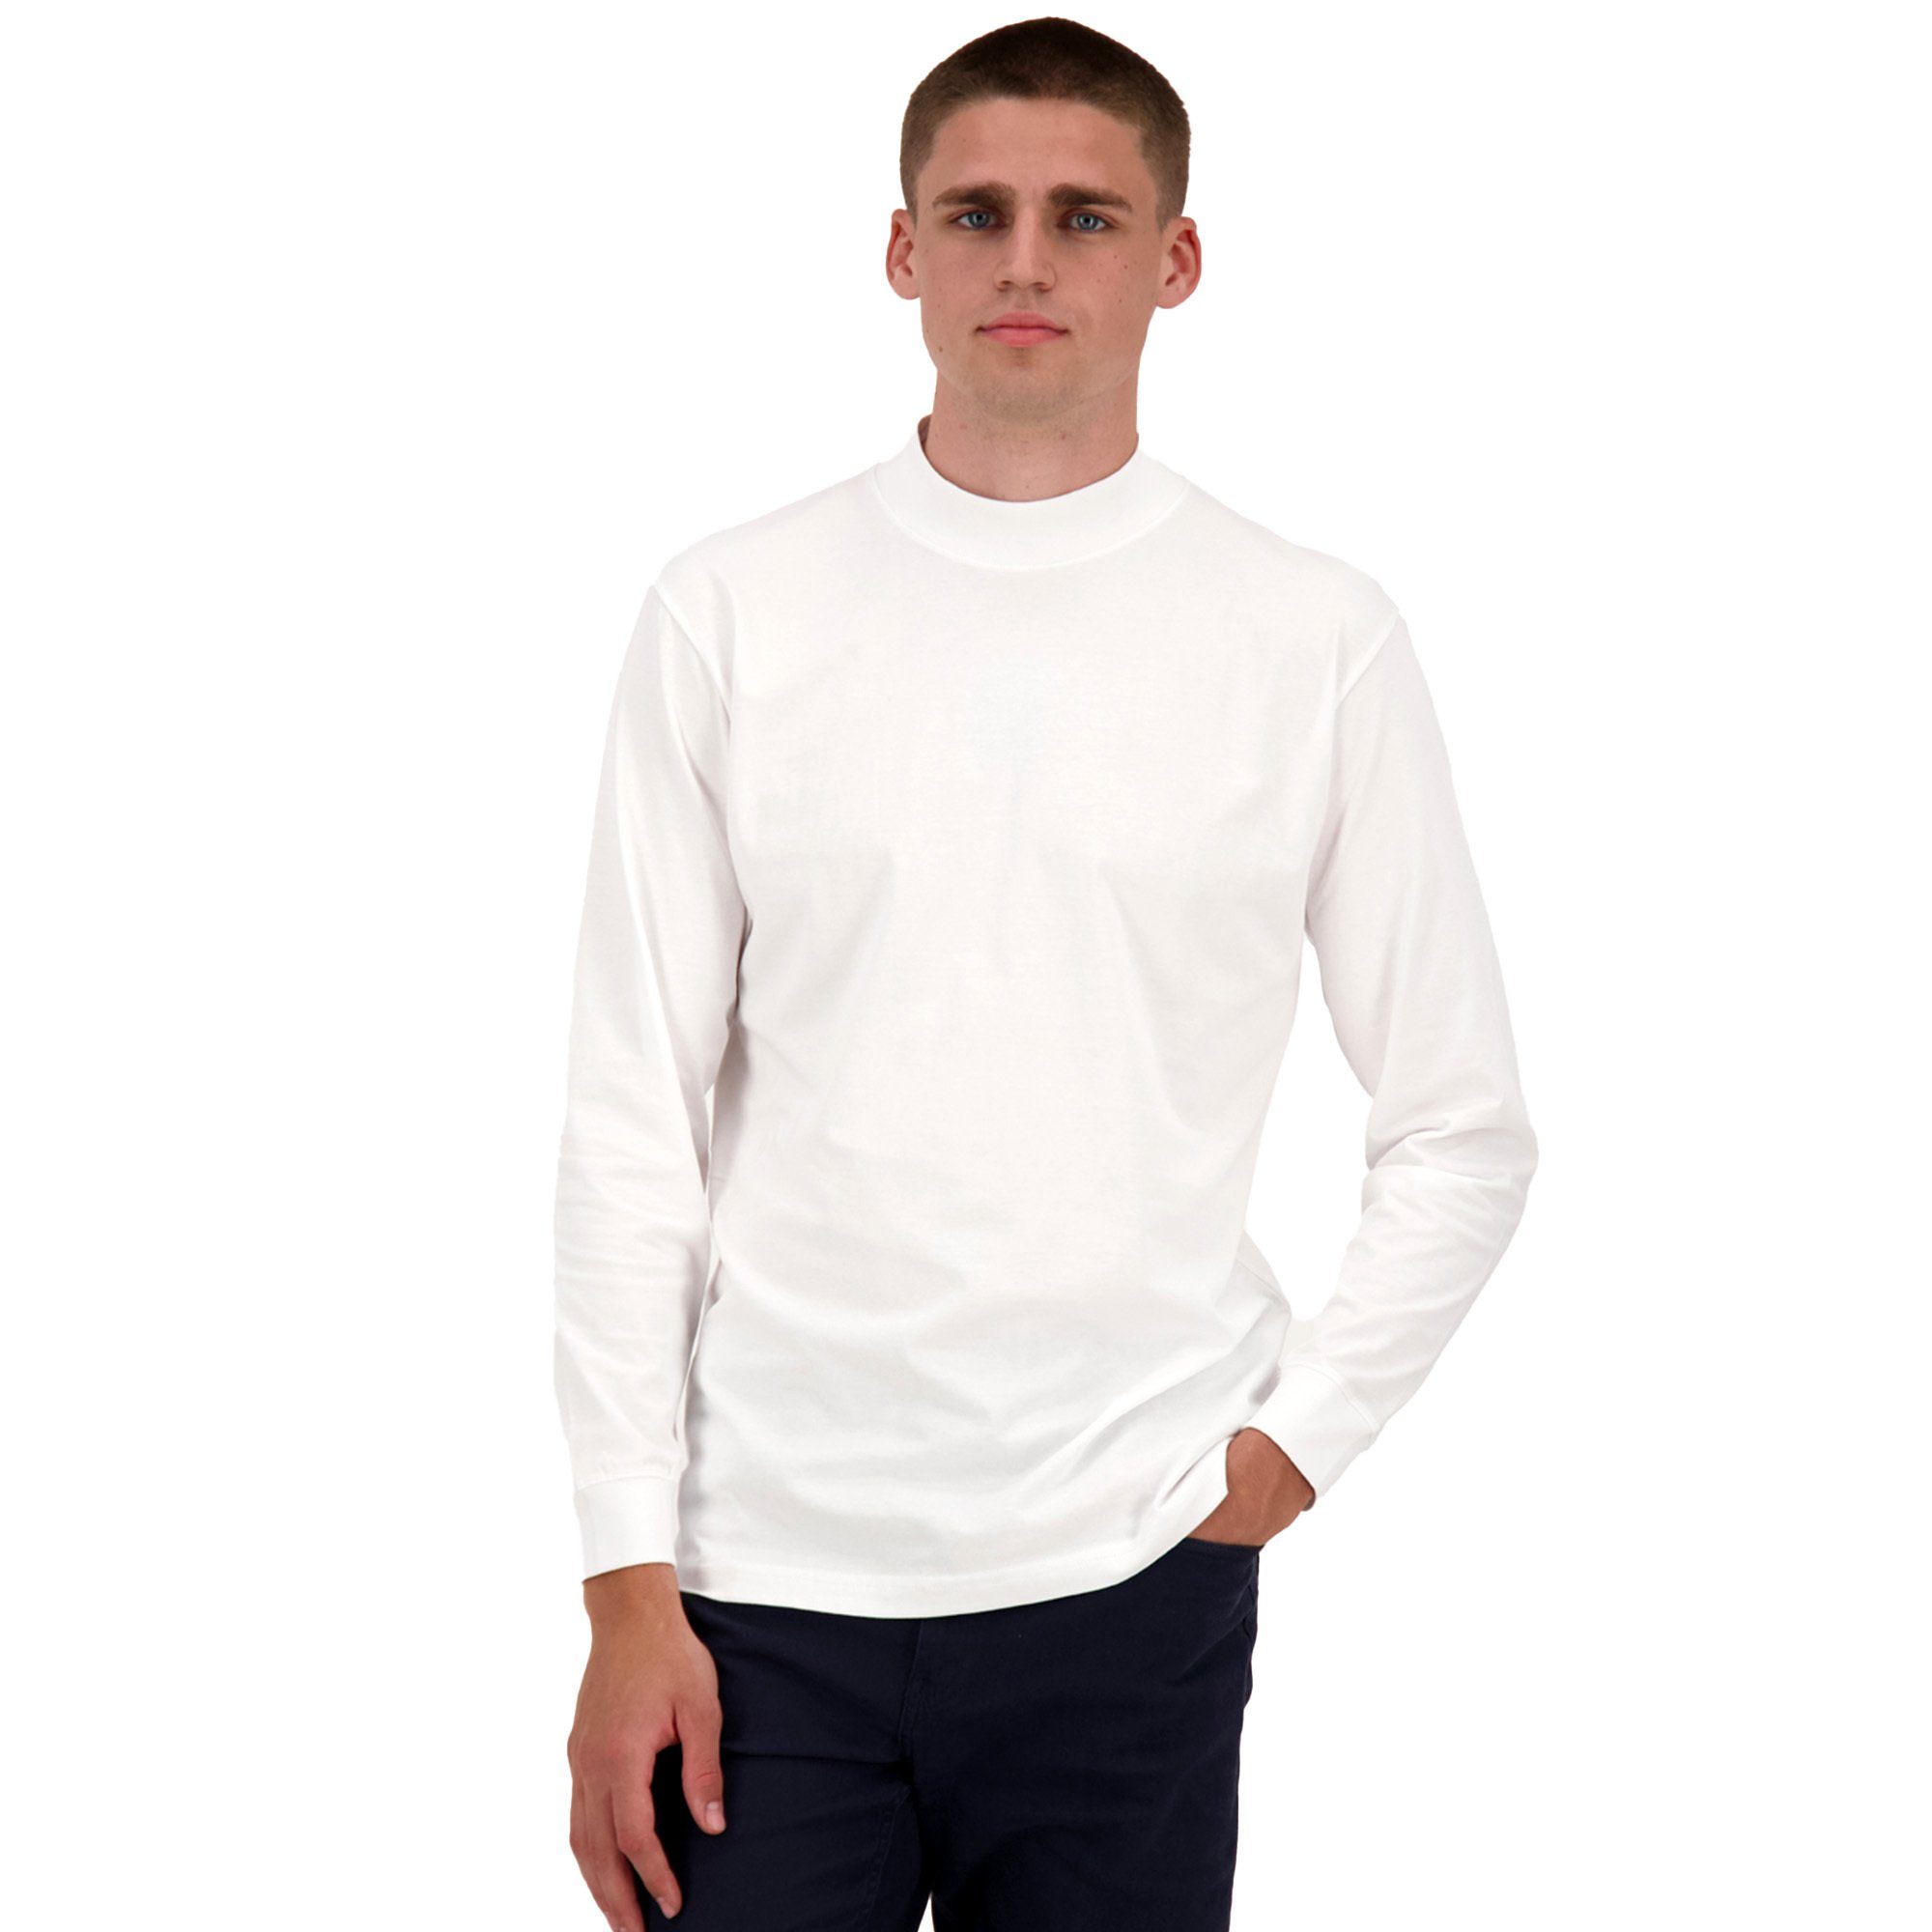 RAGMAN Sweatshirt Herren Stehkragen-Pullover Basic Langarm - Weiß